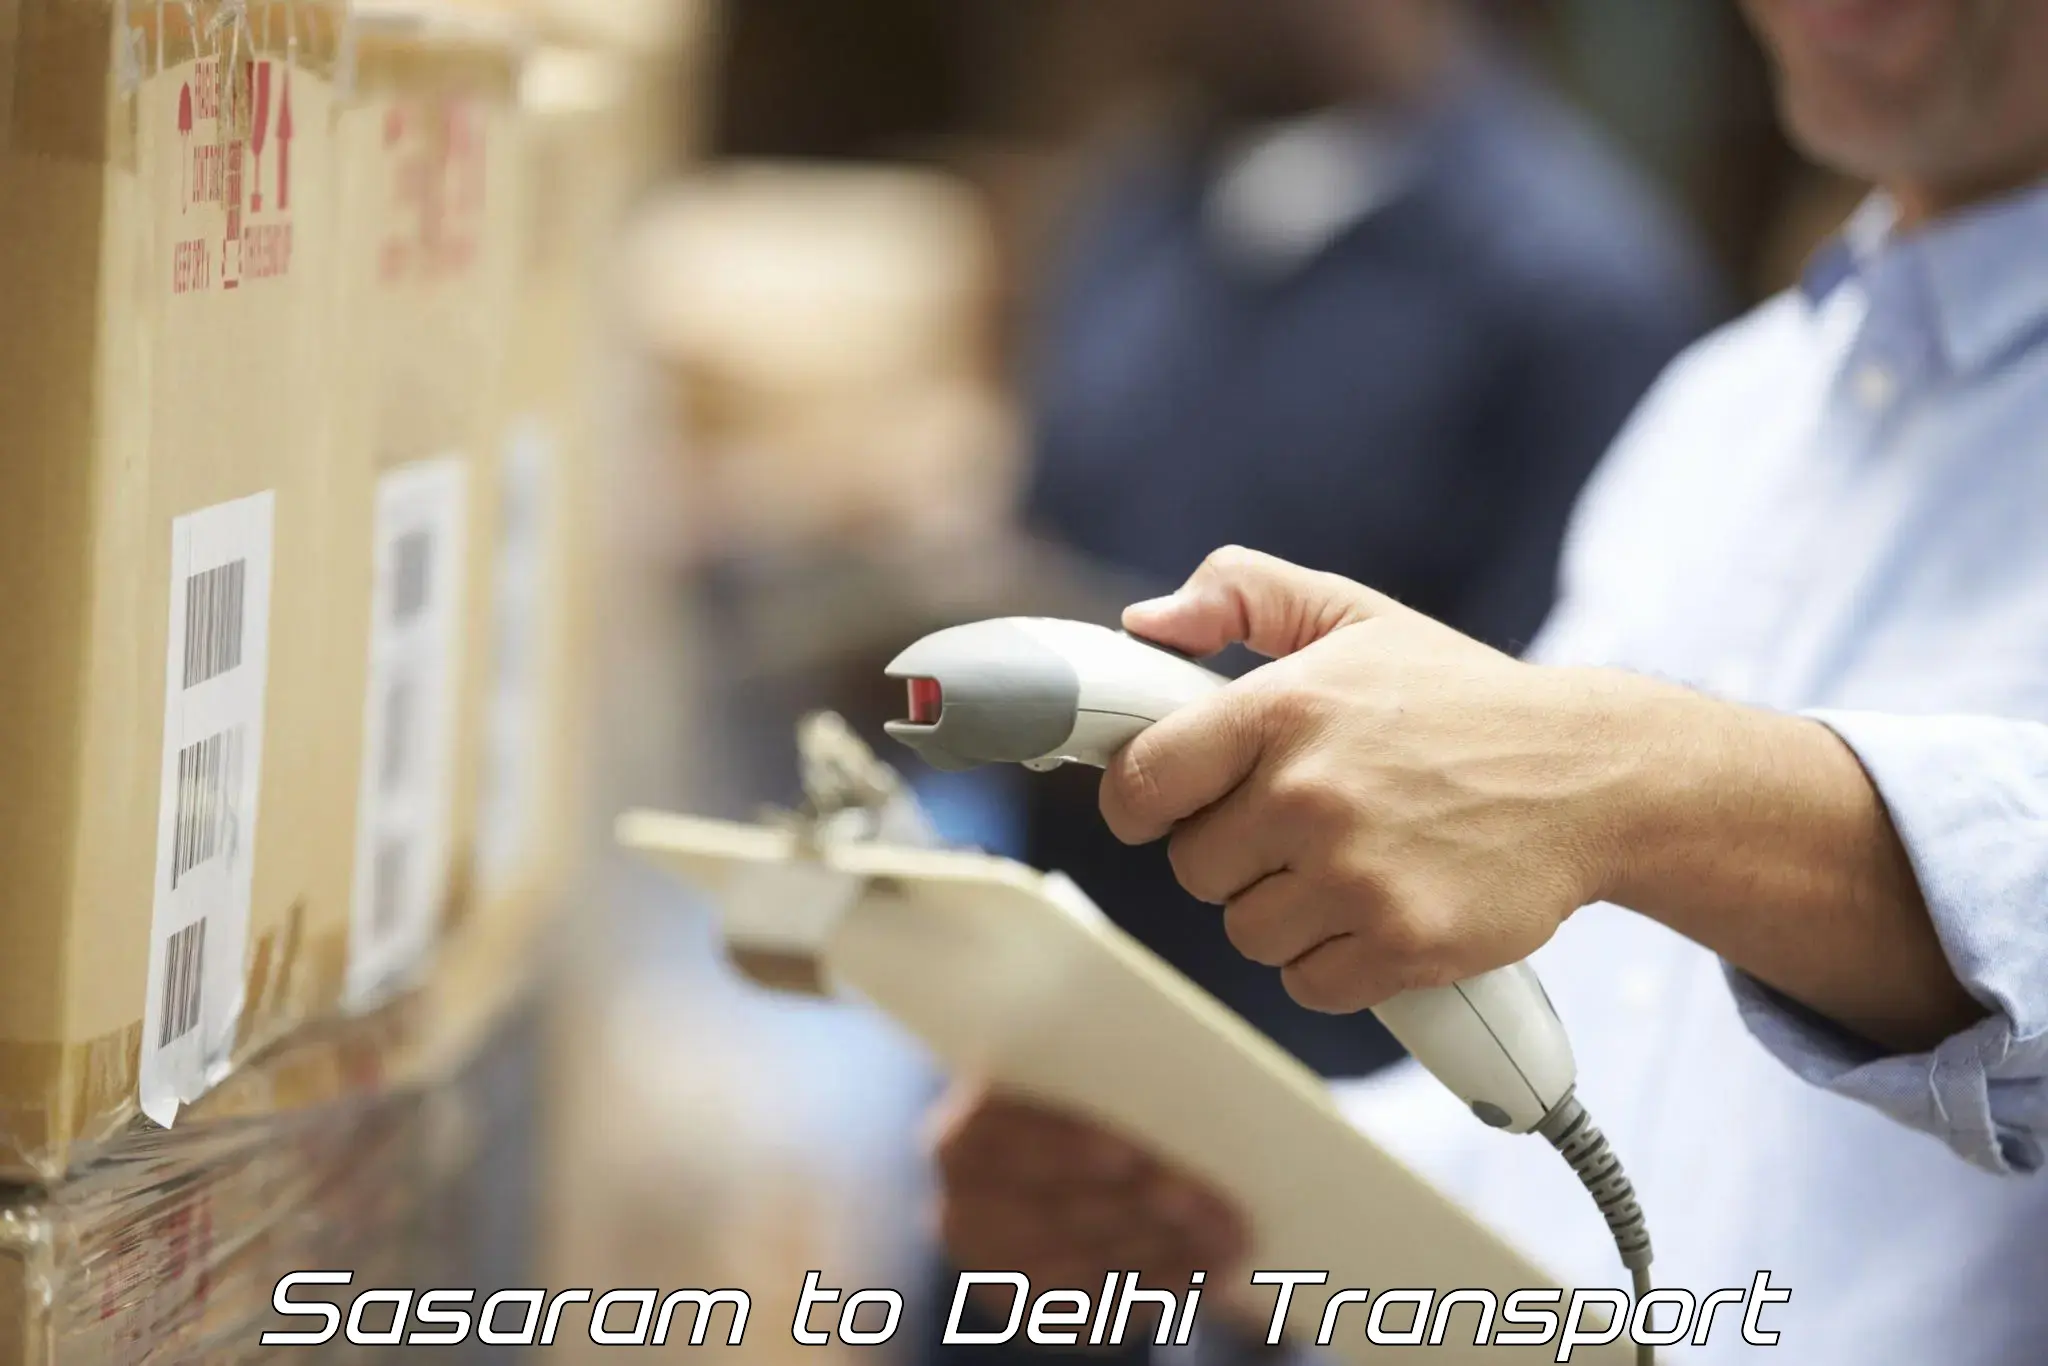 Transport in sharing Sasaram to Delhi